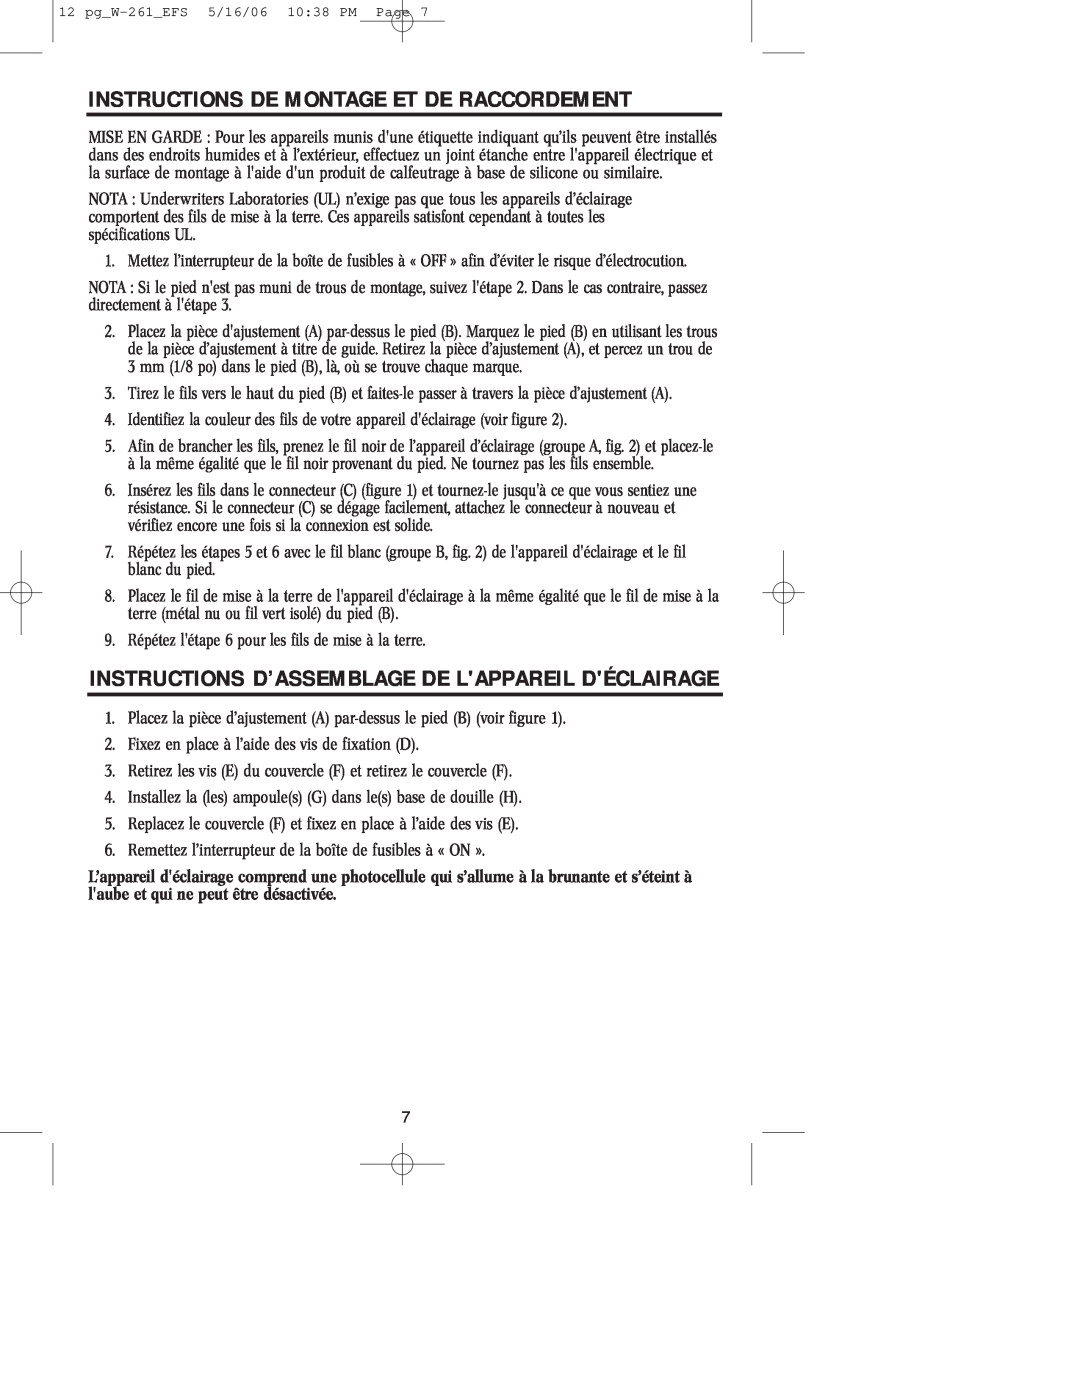 Westinghouse W-261 Instructions De Montage Et De Raccordement, Instructions D’Assemblage De Lappareil Déclairage 